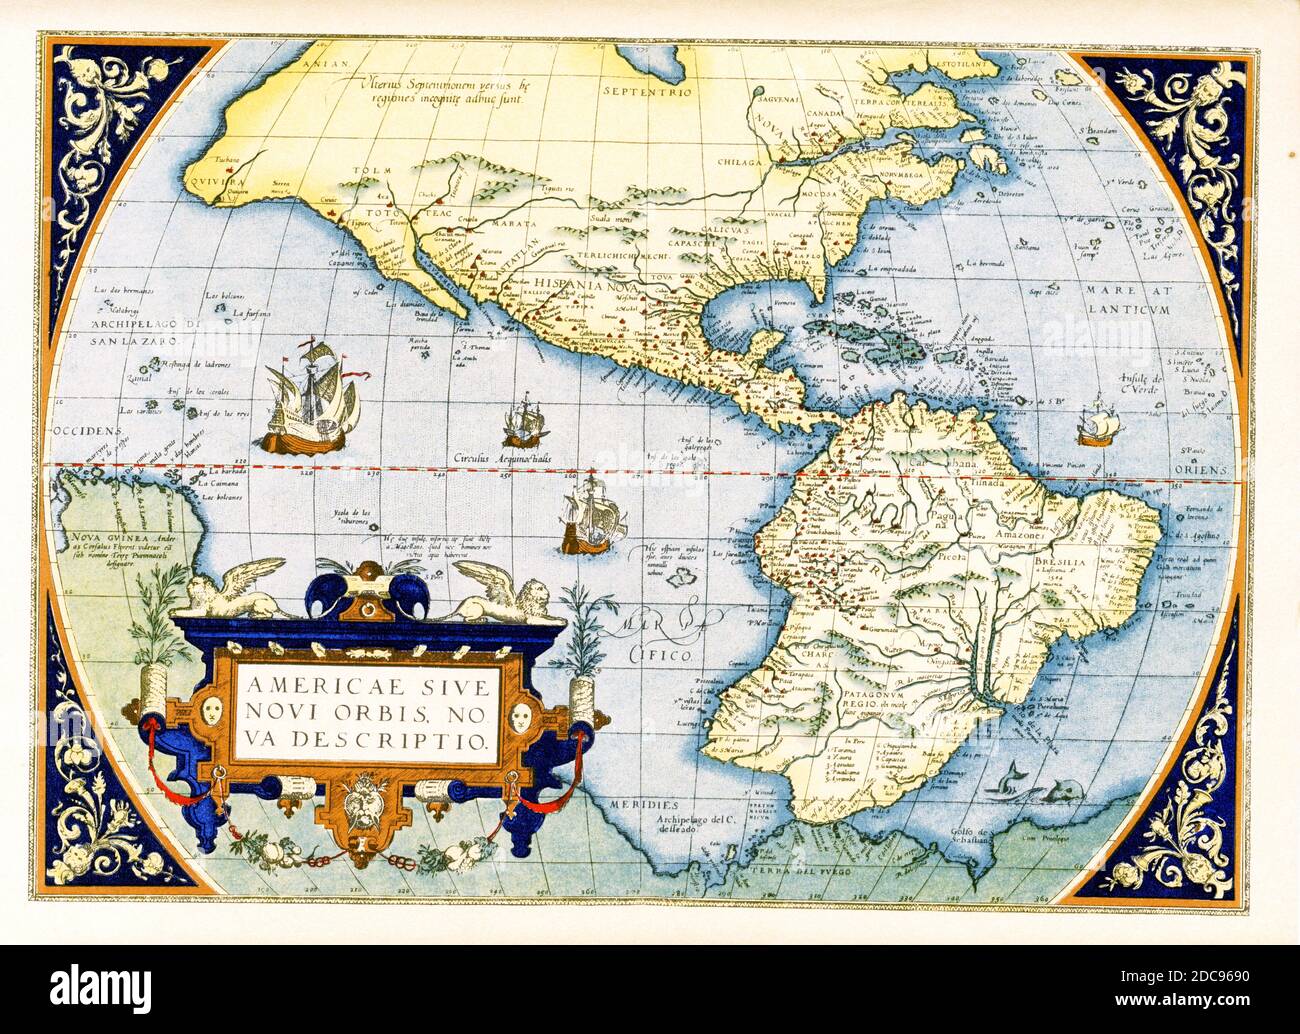 Carte des Amériques d’Abraham Ortelius — Americae sive Novi Orbis, Nova Descriptio. Initialement publiée en 1570, la première plaque de cette carte était basée sur la carte multifeuille de Gerard Mercator du monde de 1569. Gravée par Frans Hogenberg, cette carte est devenue l'une des plus célèbres cartes influentes du Nouveau monde et la base d'une grande partie de la cartographie future des Amériques. Abraham Ortelius (1527-1598) était un cartographe, géographe et cosmographe néerlandais, reconnu conventionnellement comme le créateur du premier Atlas moderne, le Theatrum Orbis Terrarum. Banque D'Images